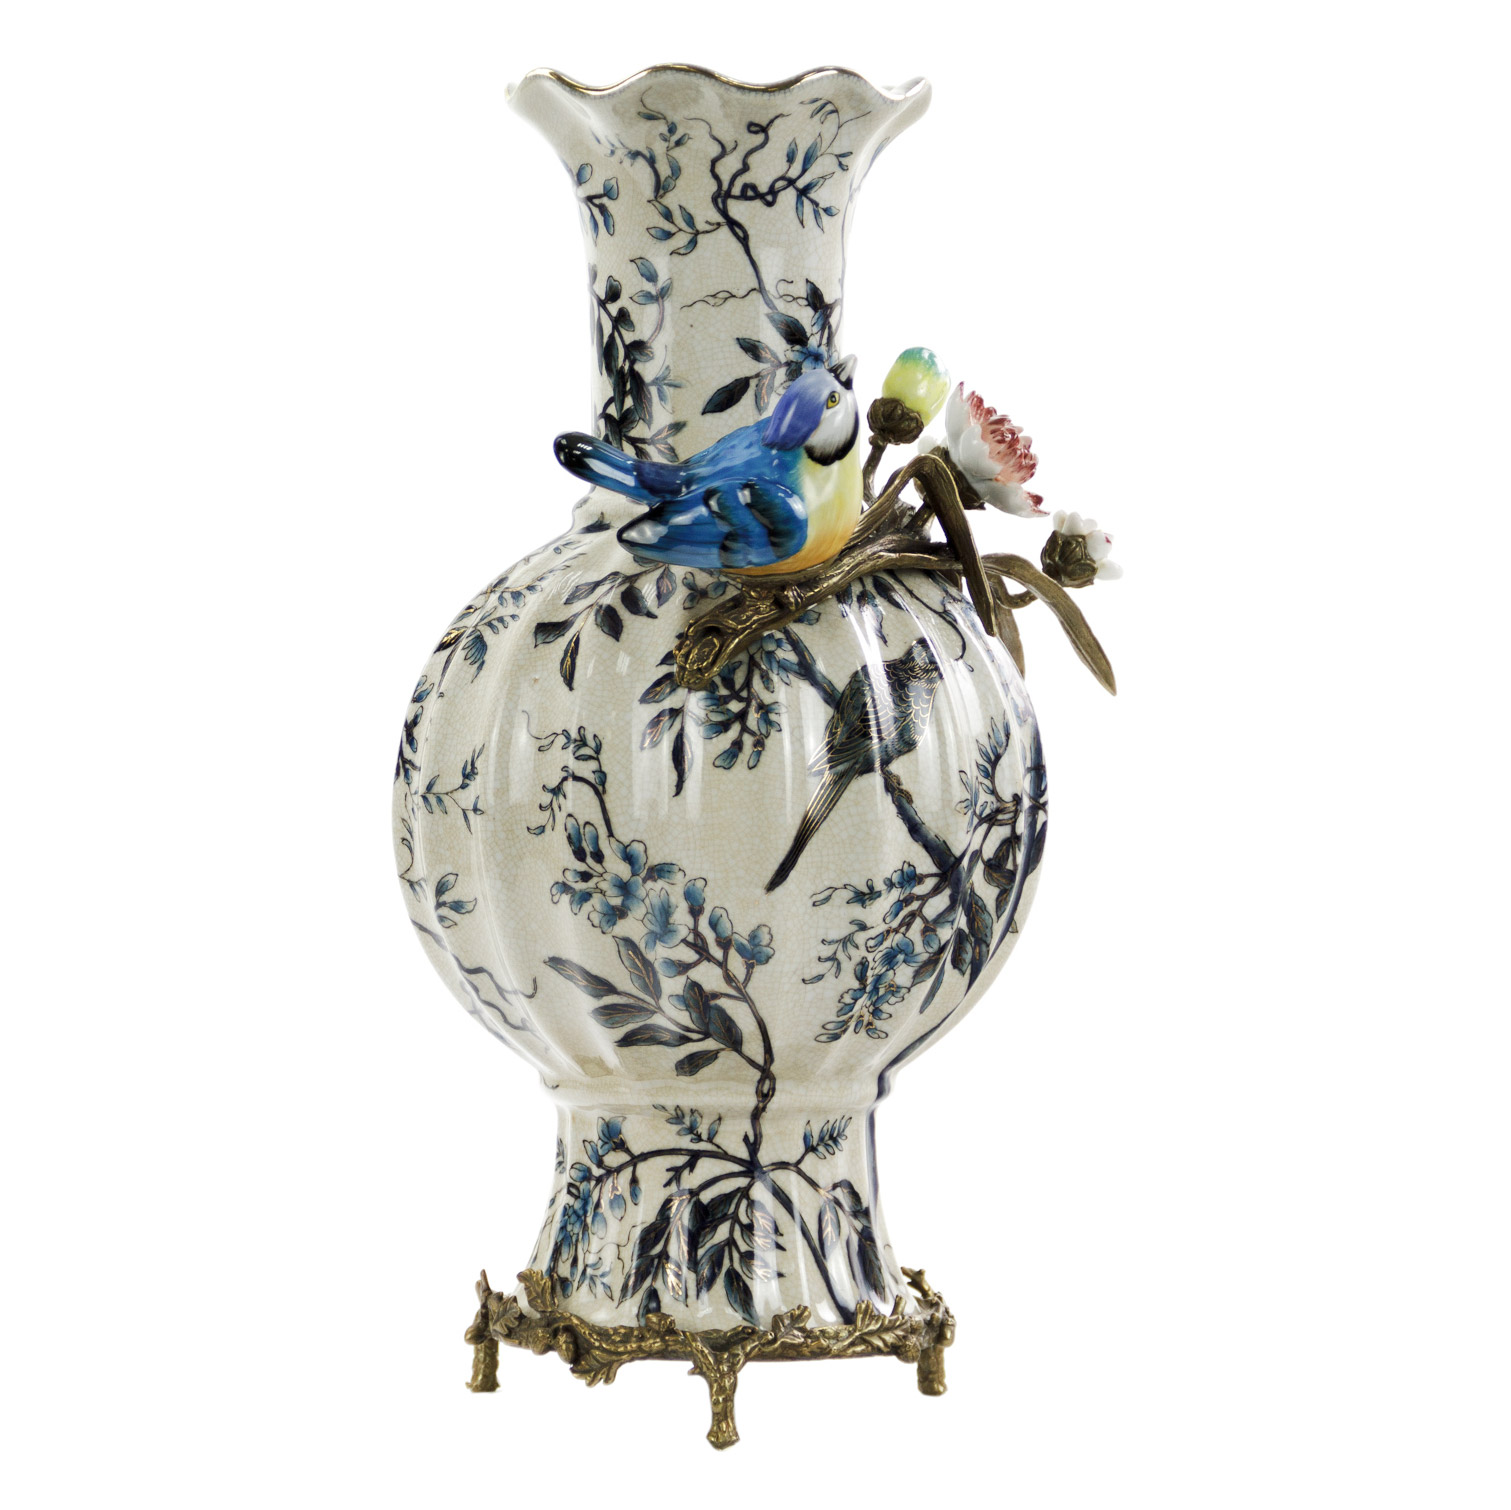 Ваза Glasar фарфоровая с бронзовыми эллементами и фарфоровой птичкой   25x20x38см ваза glasar фарфоровая синяя 19х19х35 см